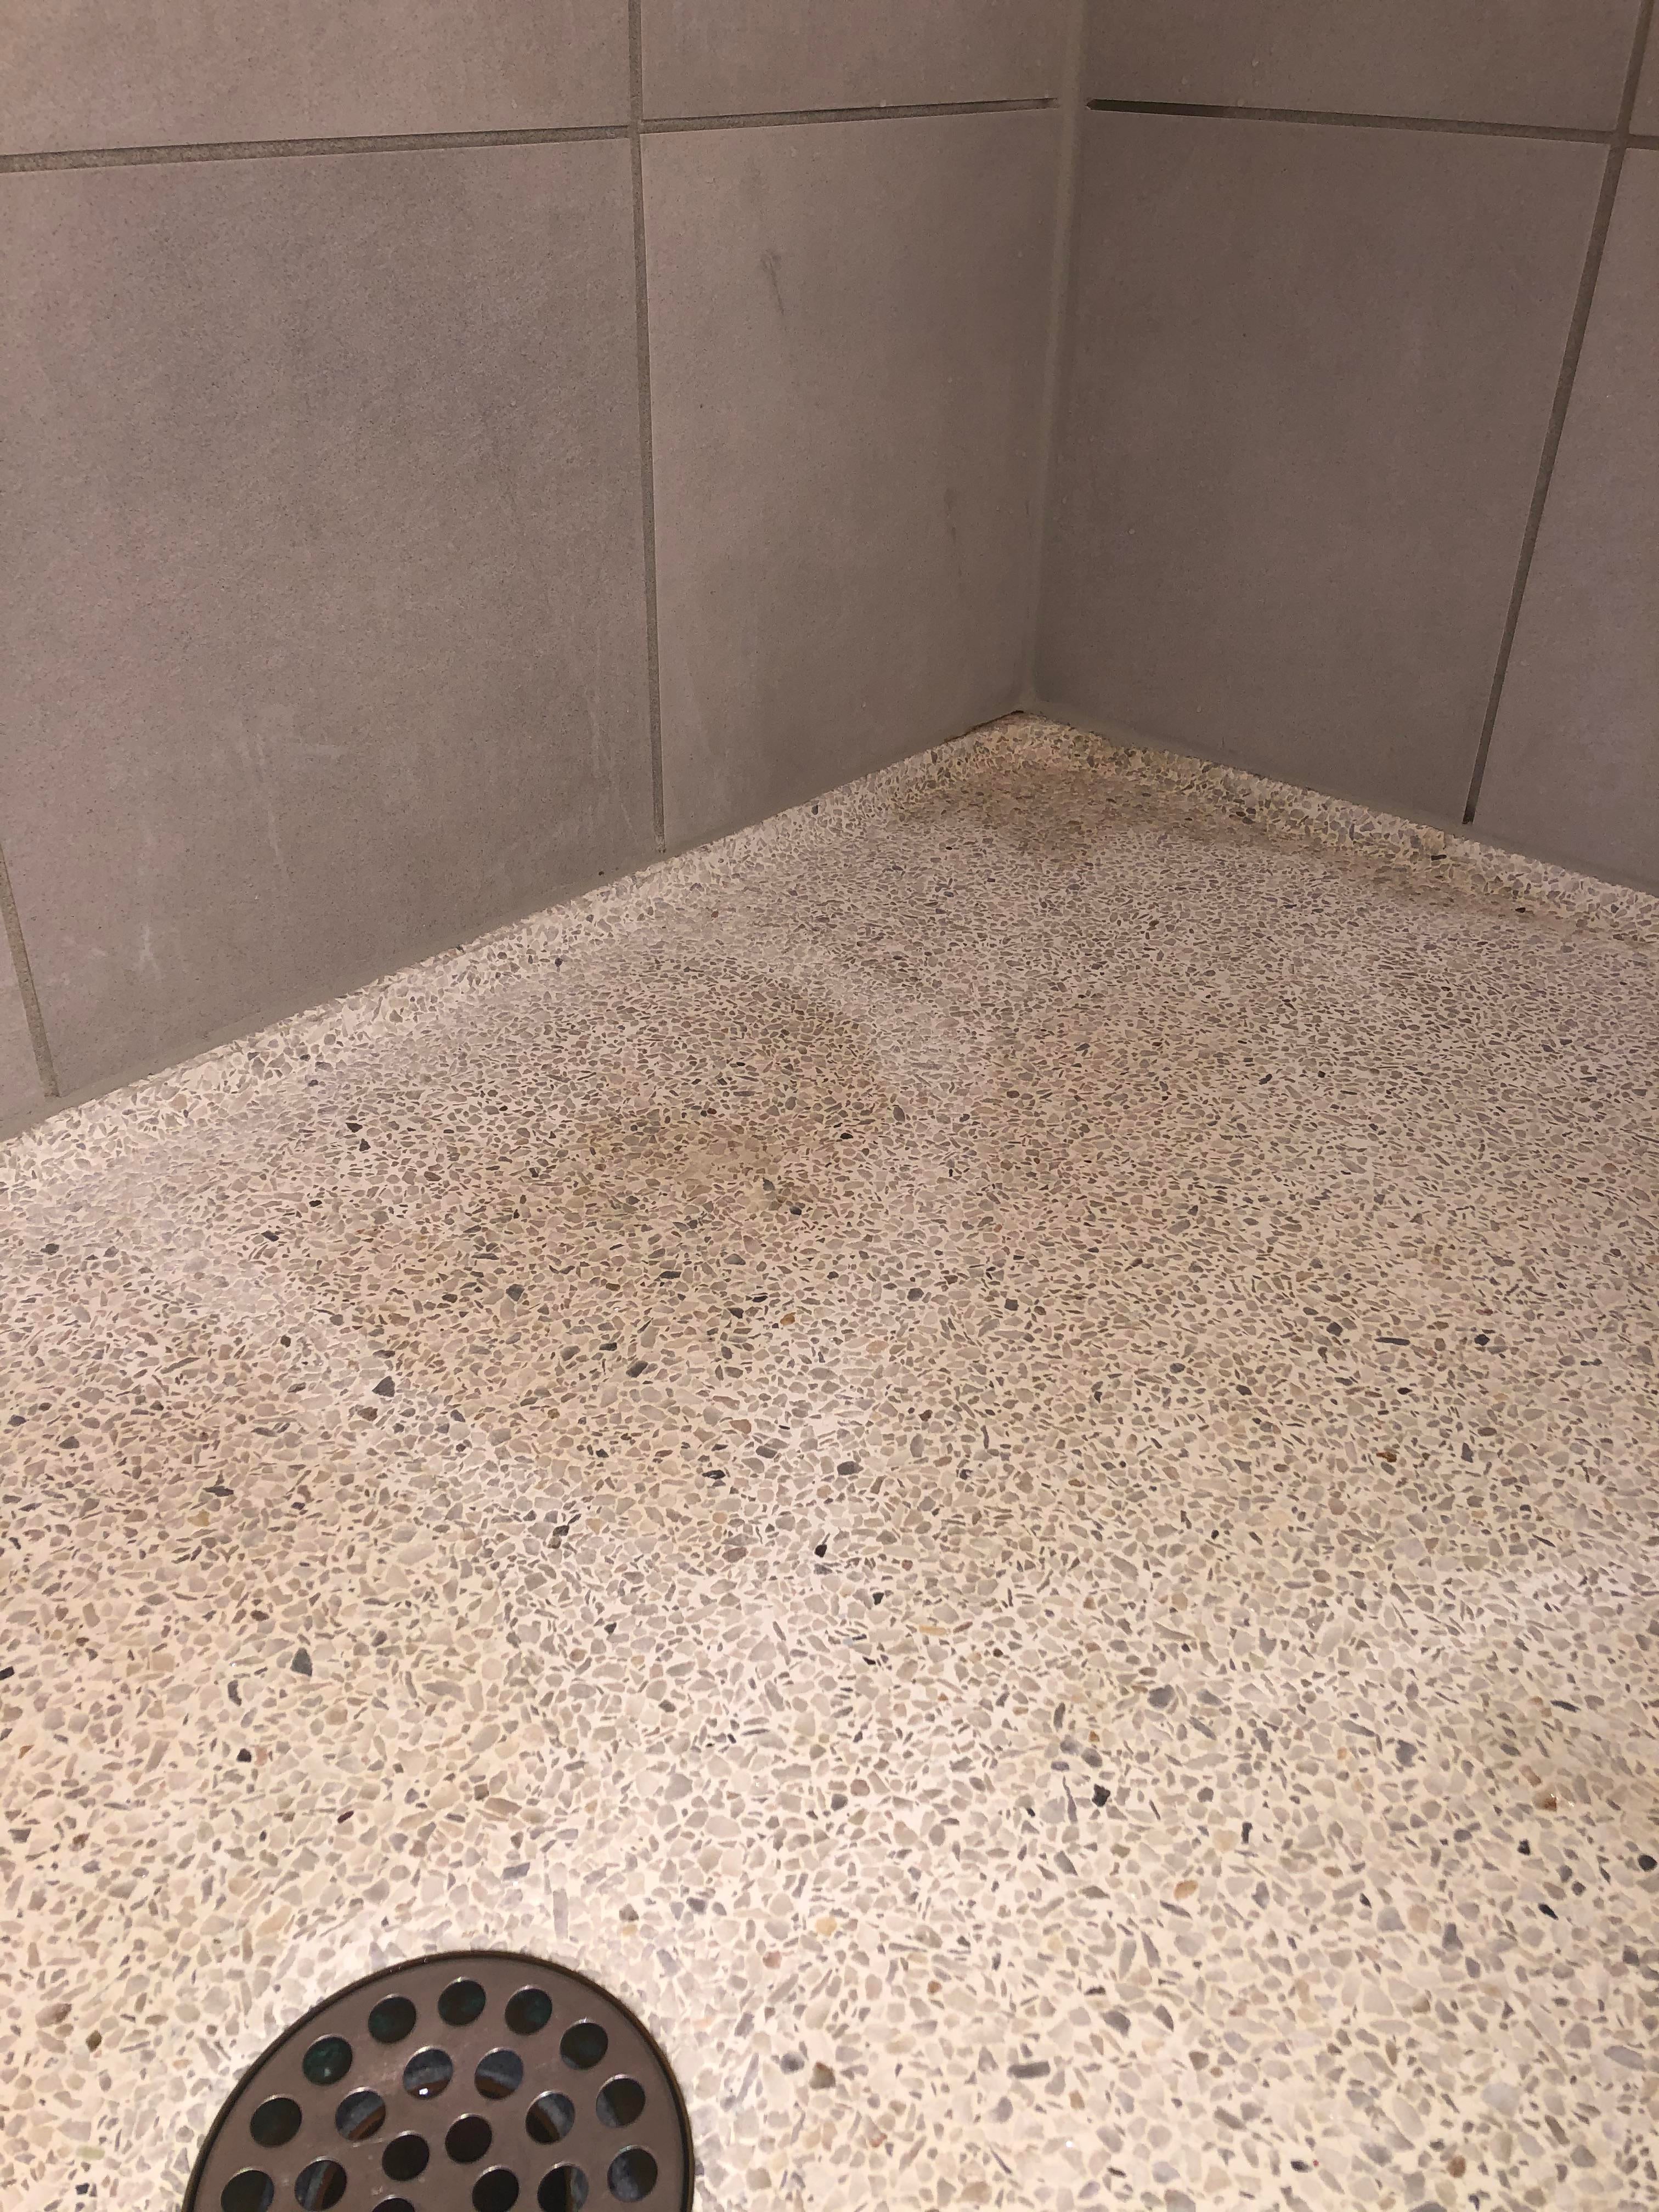 How to Clean Terrazzo Shower Floor?